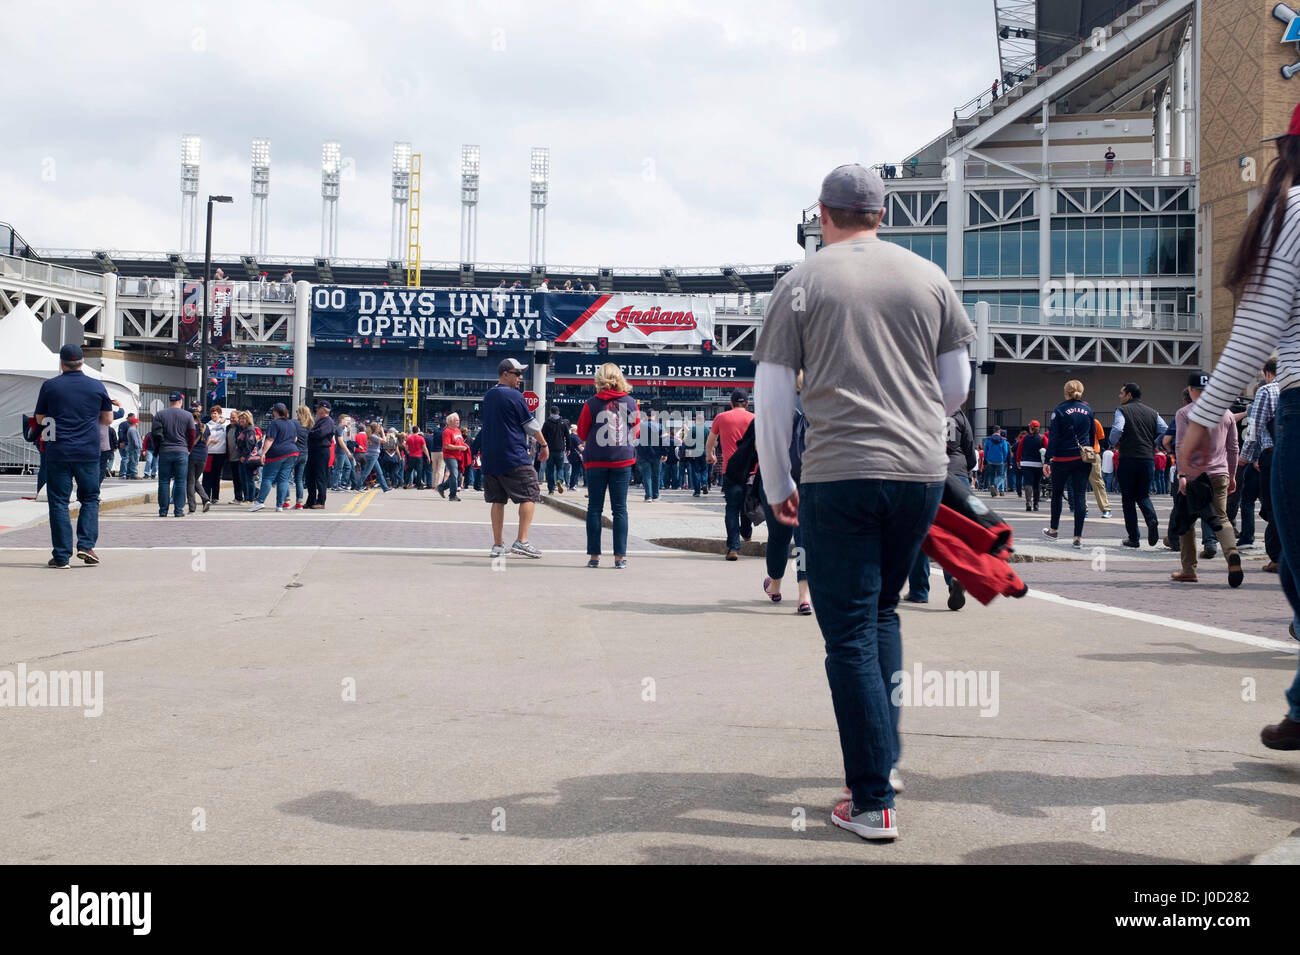 L'entrée des fans Progressive Field pour les Indians de Cleveland accueil match d'ouverture le 11 avril, 2017 Banque D'Images